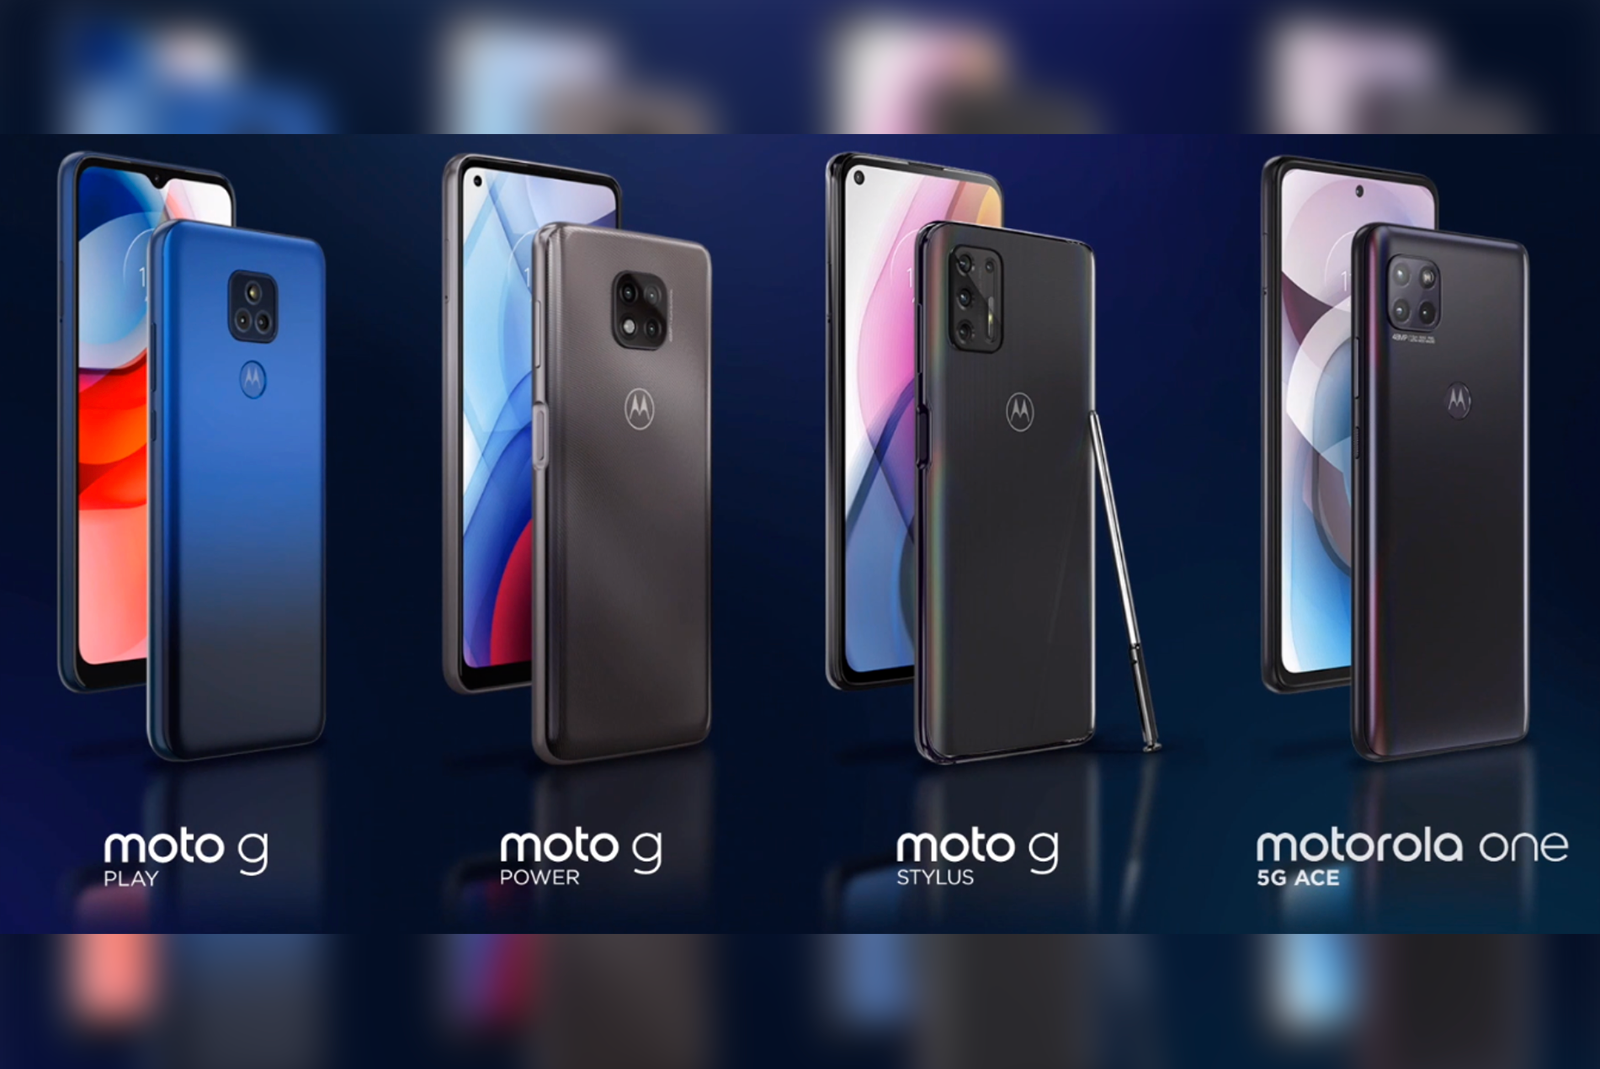 Motorola One 5G Ace revealed alongside G Power, G Play, and G Stylus refresh photo 1